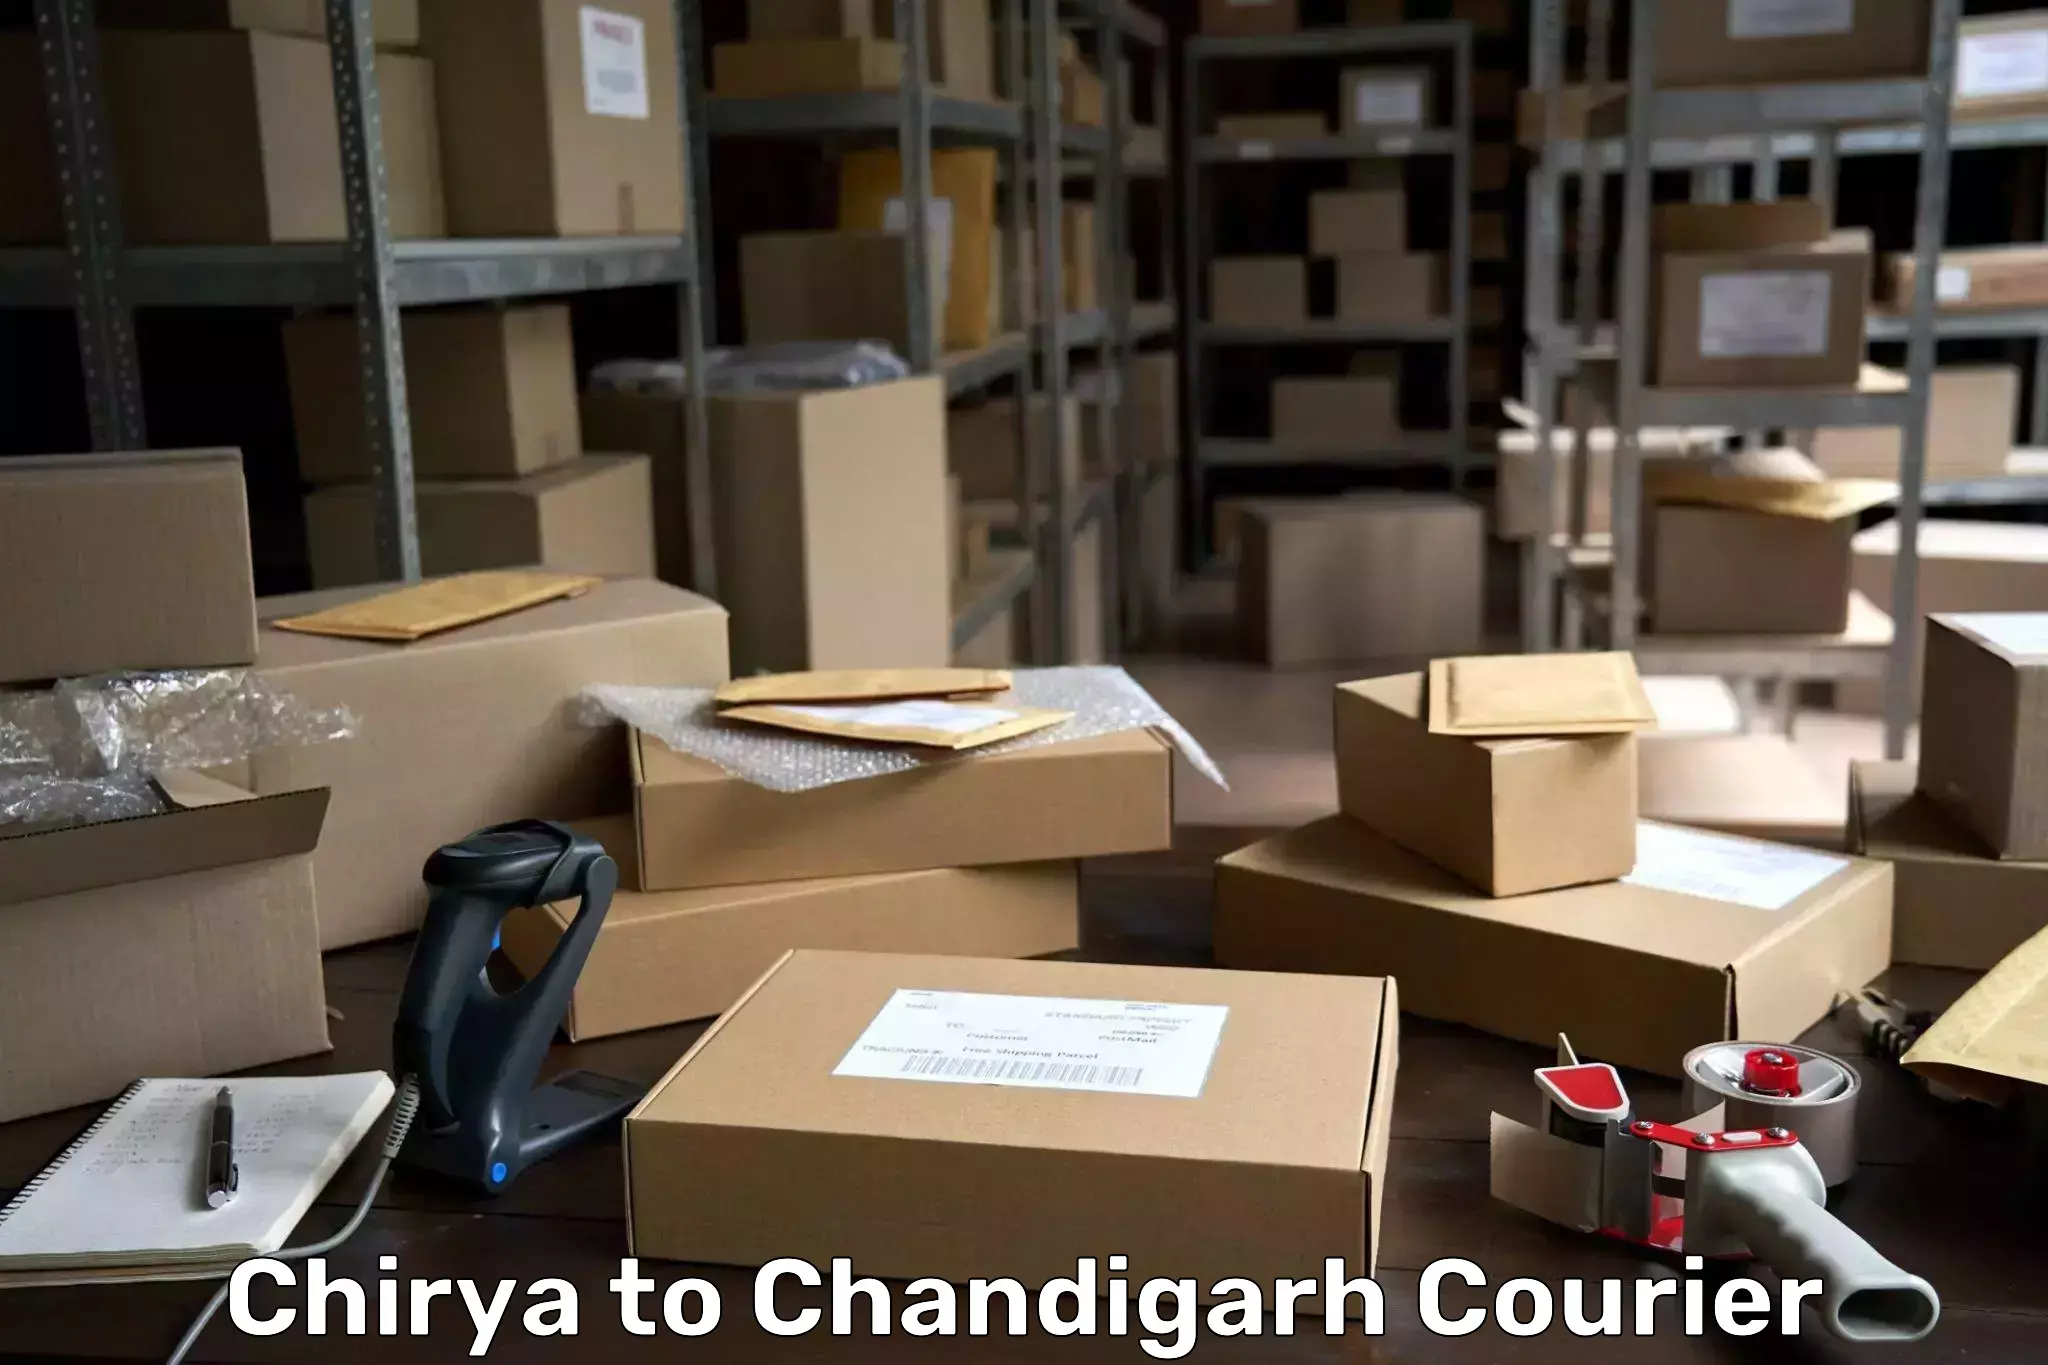 Individual parcel service Chirya to Chandigarh